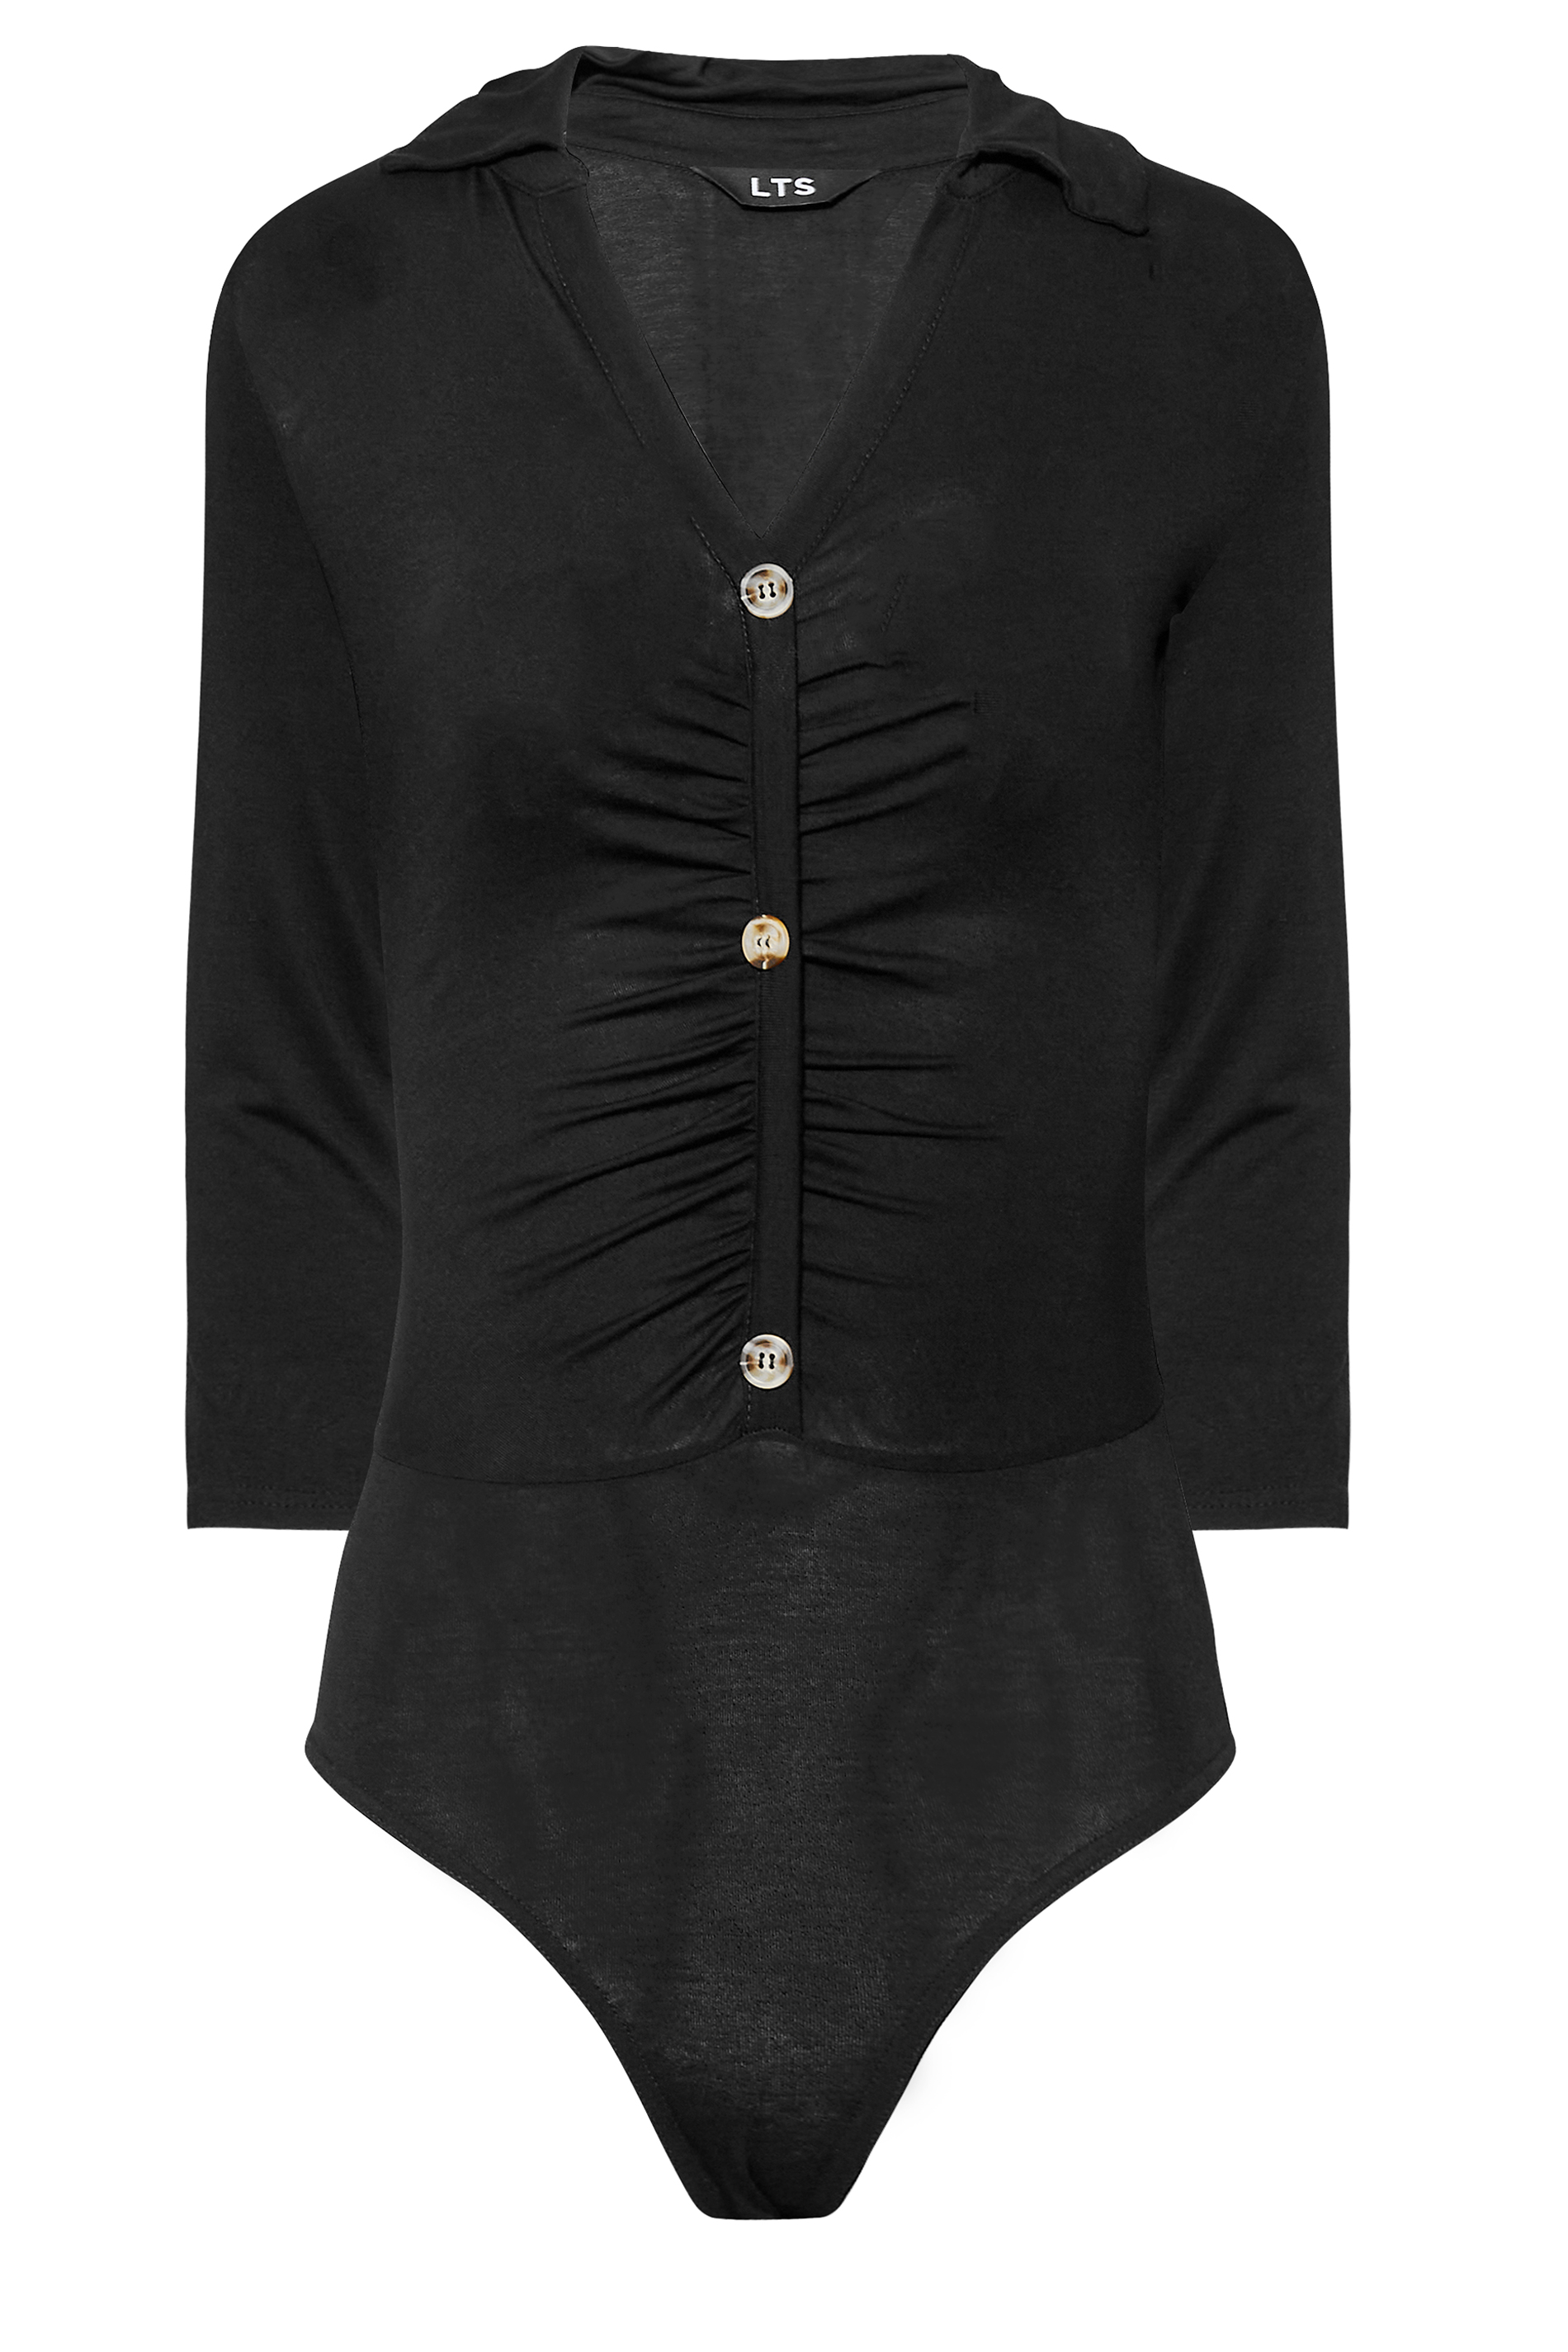 Black Bodysuit Long Sleeve, Long Sleeve Button Bodysuit